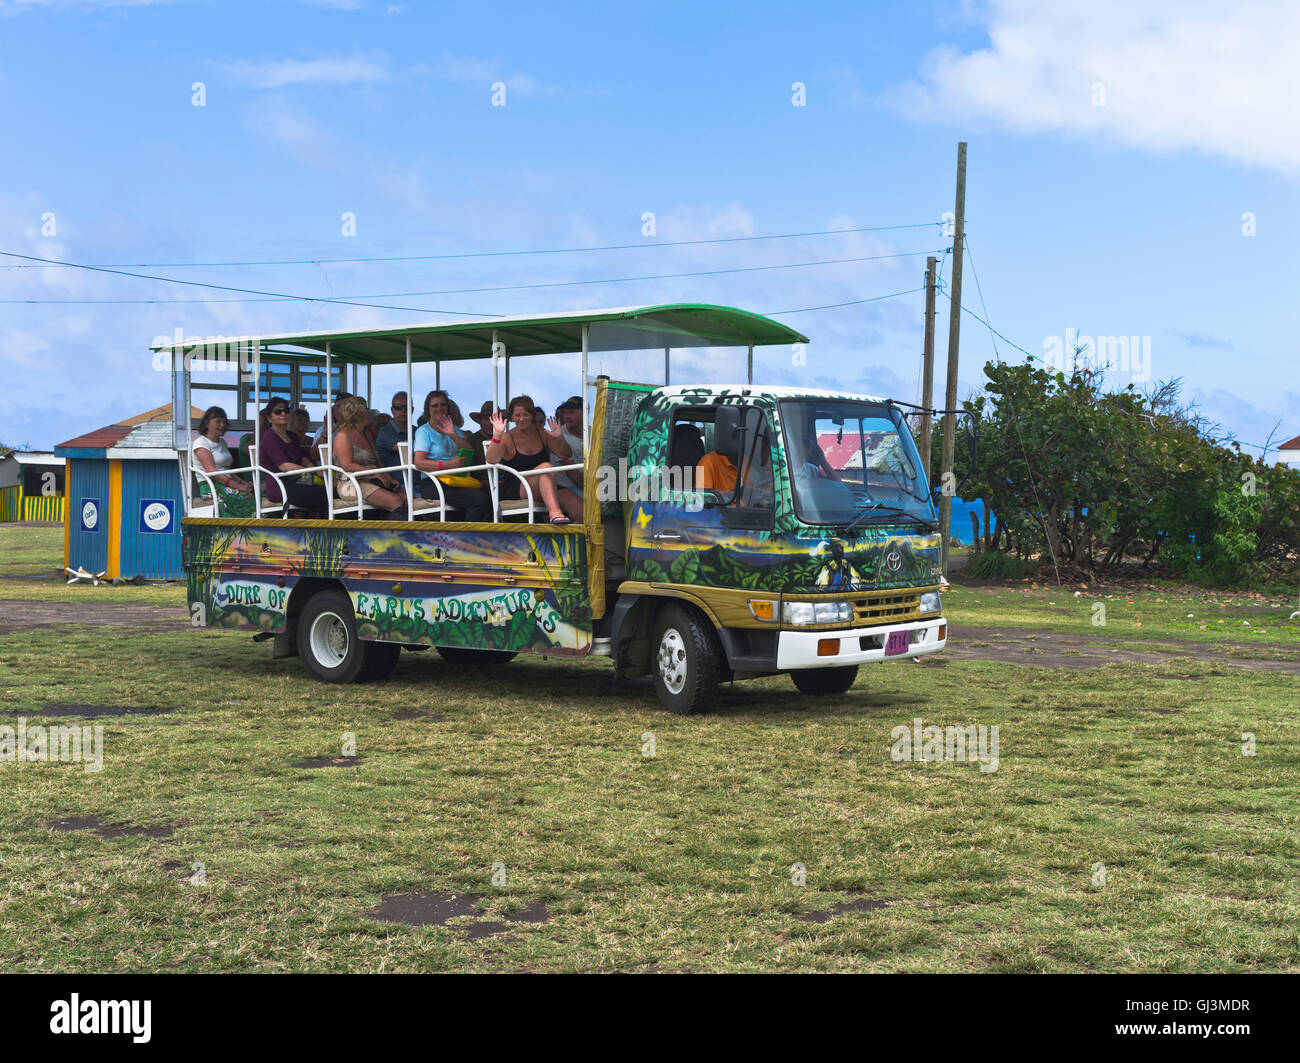 dh croisière excursion en bateau ST KITTS CARIBBEAN taxi touristique en plein air avec les touristes vacances visite Banque D'Images